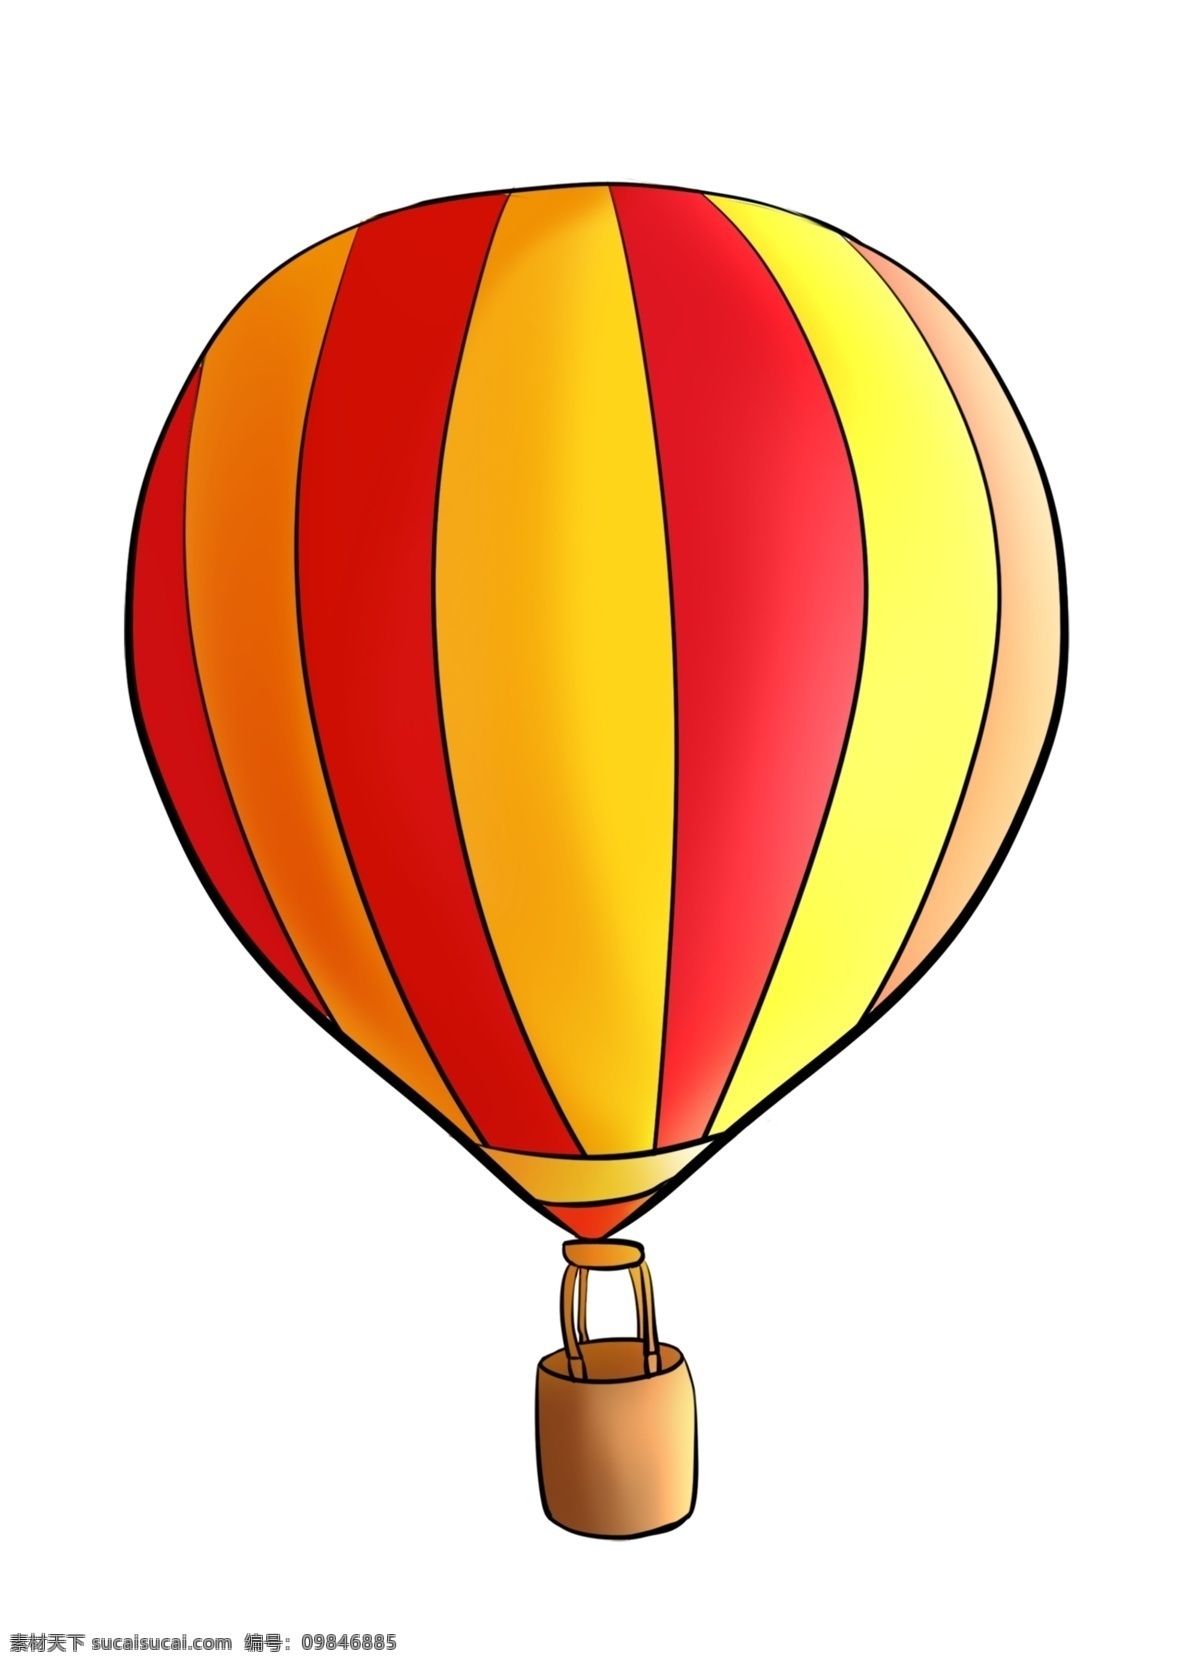 梦幻 卡通 热气球 插画 升空 乘坐 旅游